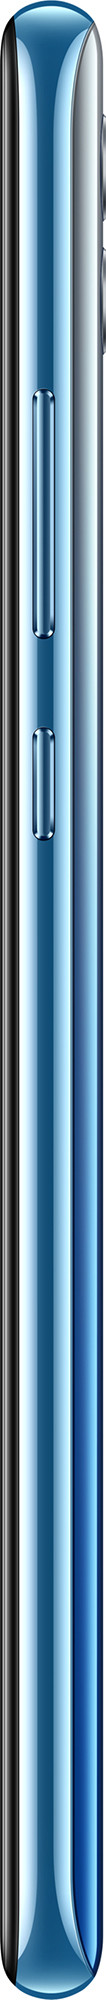 Смартфон Honor 10 Lite 3/64GB Небесно-голубой